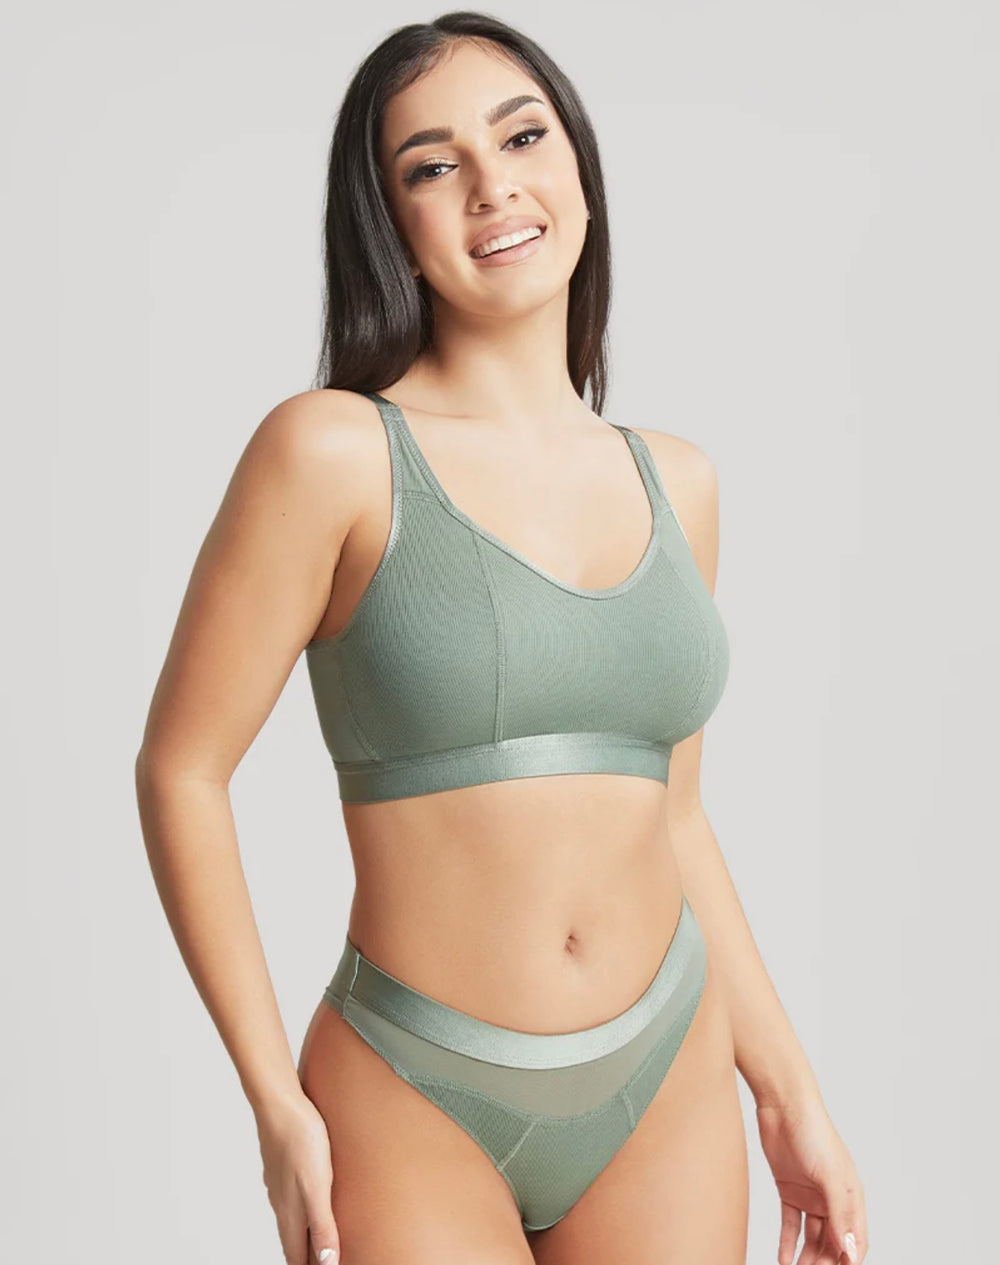 Front Zip Padded Sports Bra Panty Set for Women – Basic Lingerie